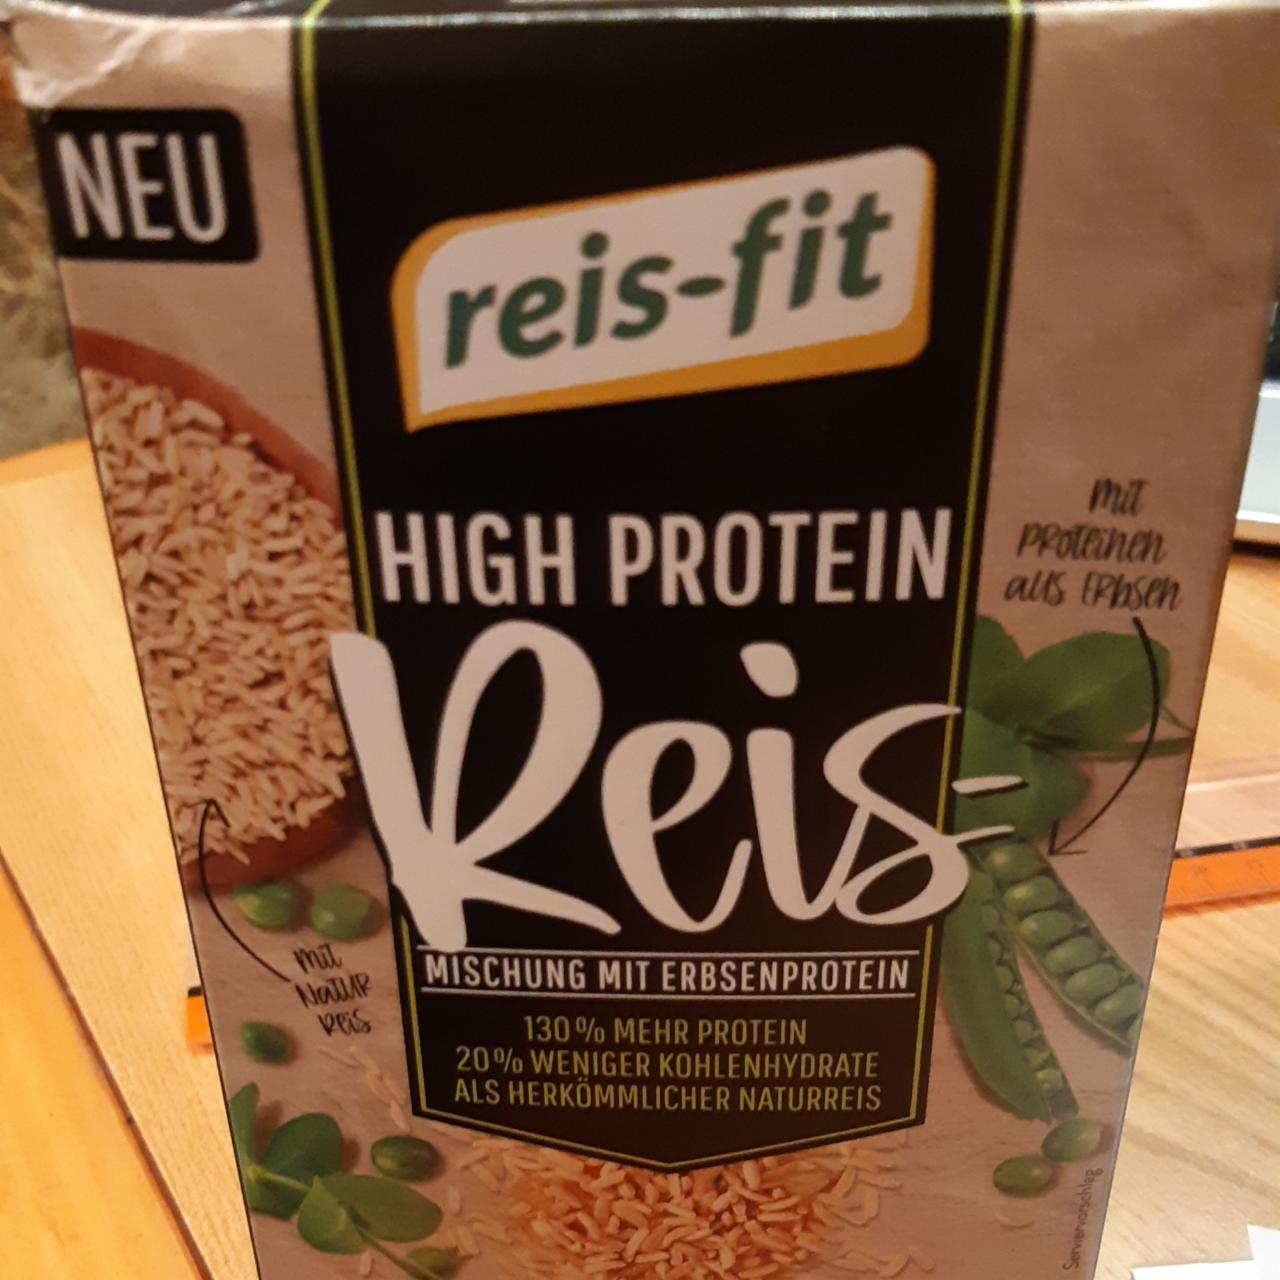 Fotografie - High Protein Reis-mischung mit erbsenprotein Reis-Fit